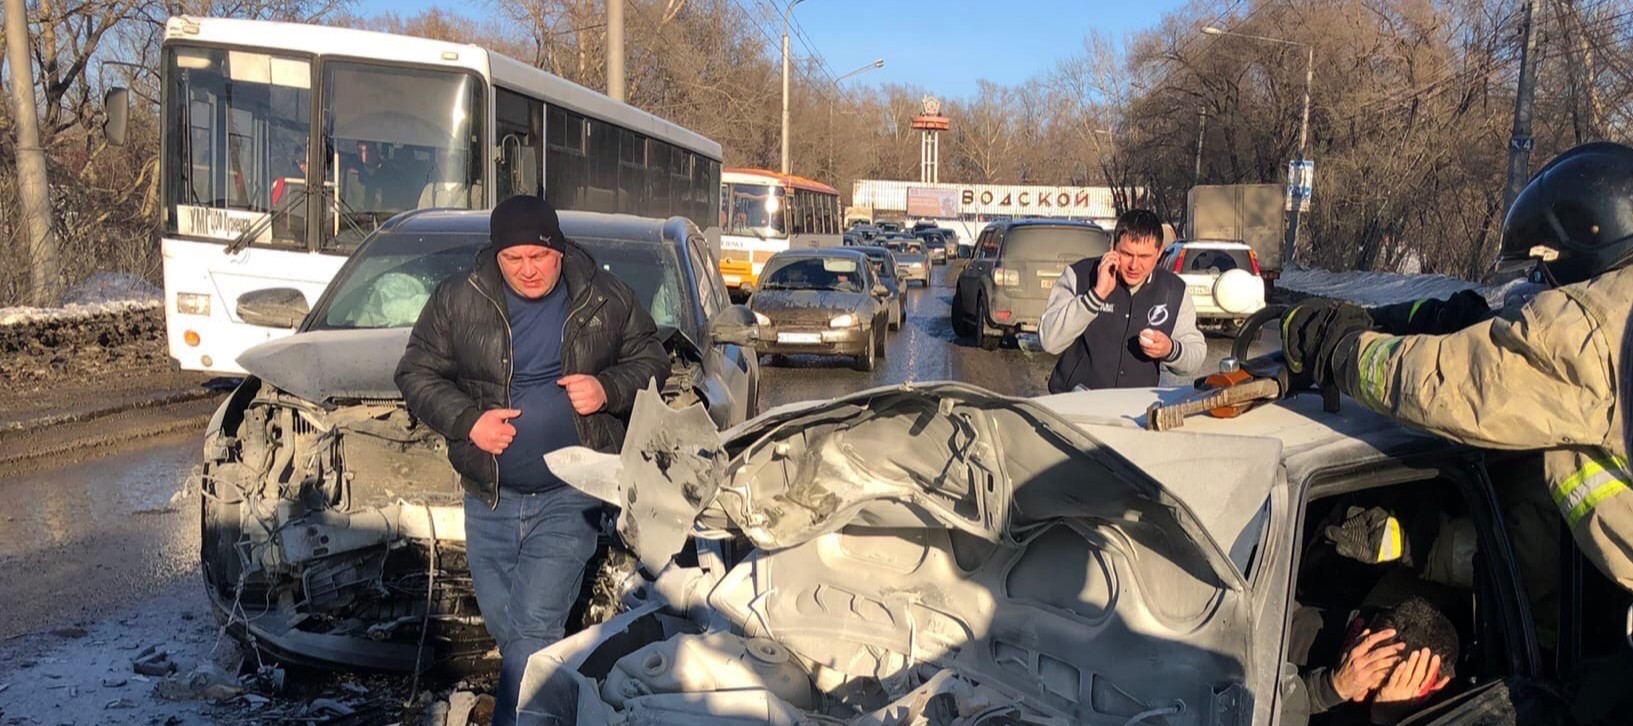 Авария в Новокузнецке вчера